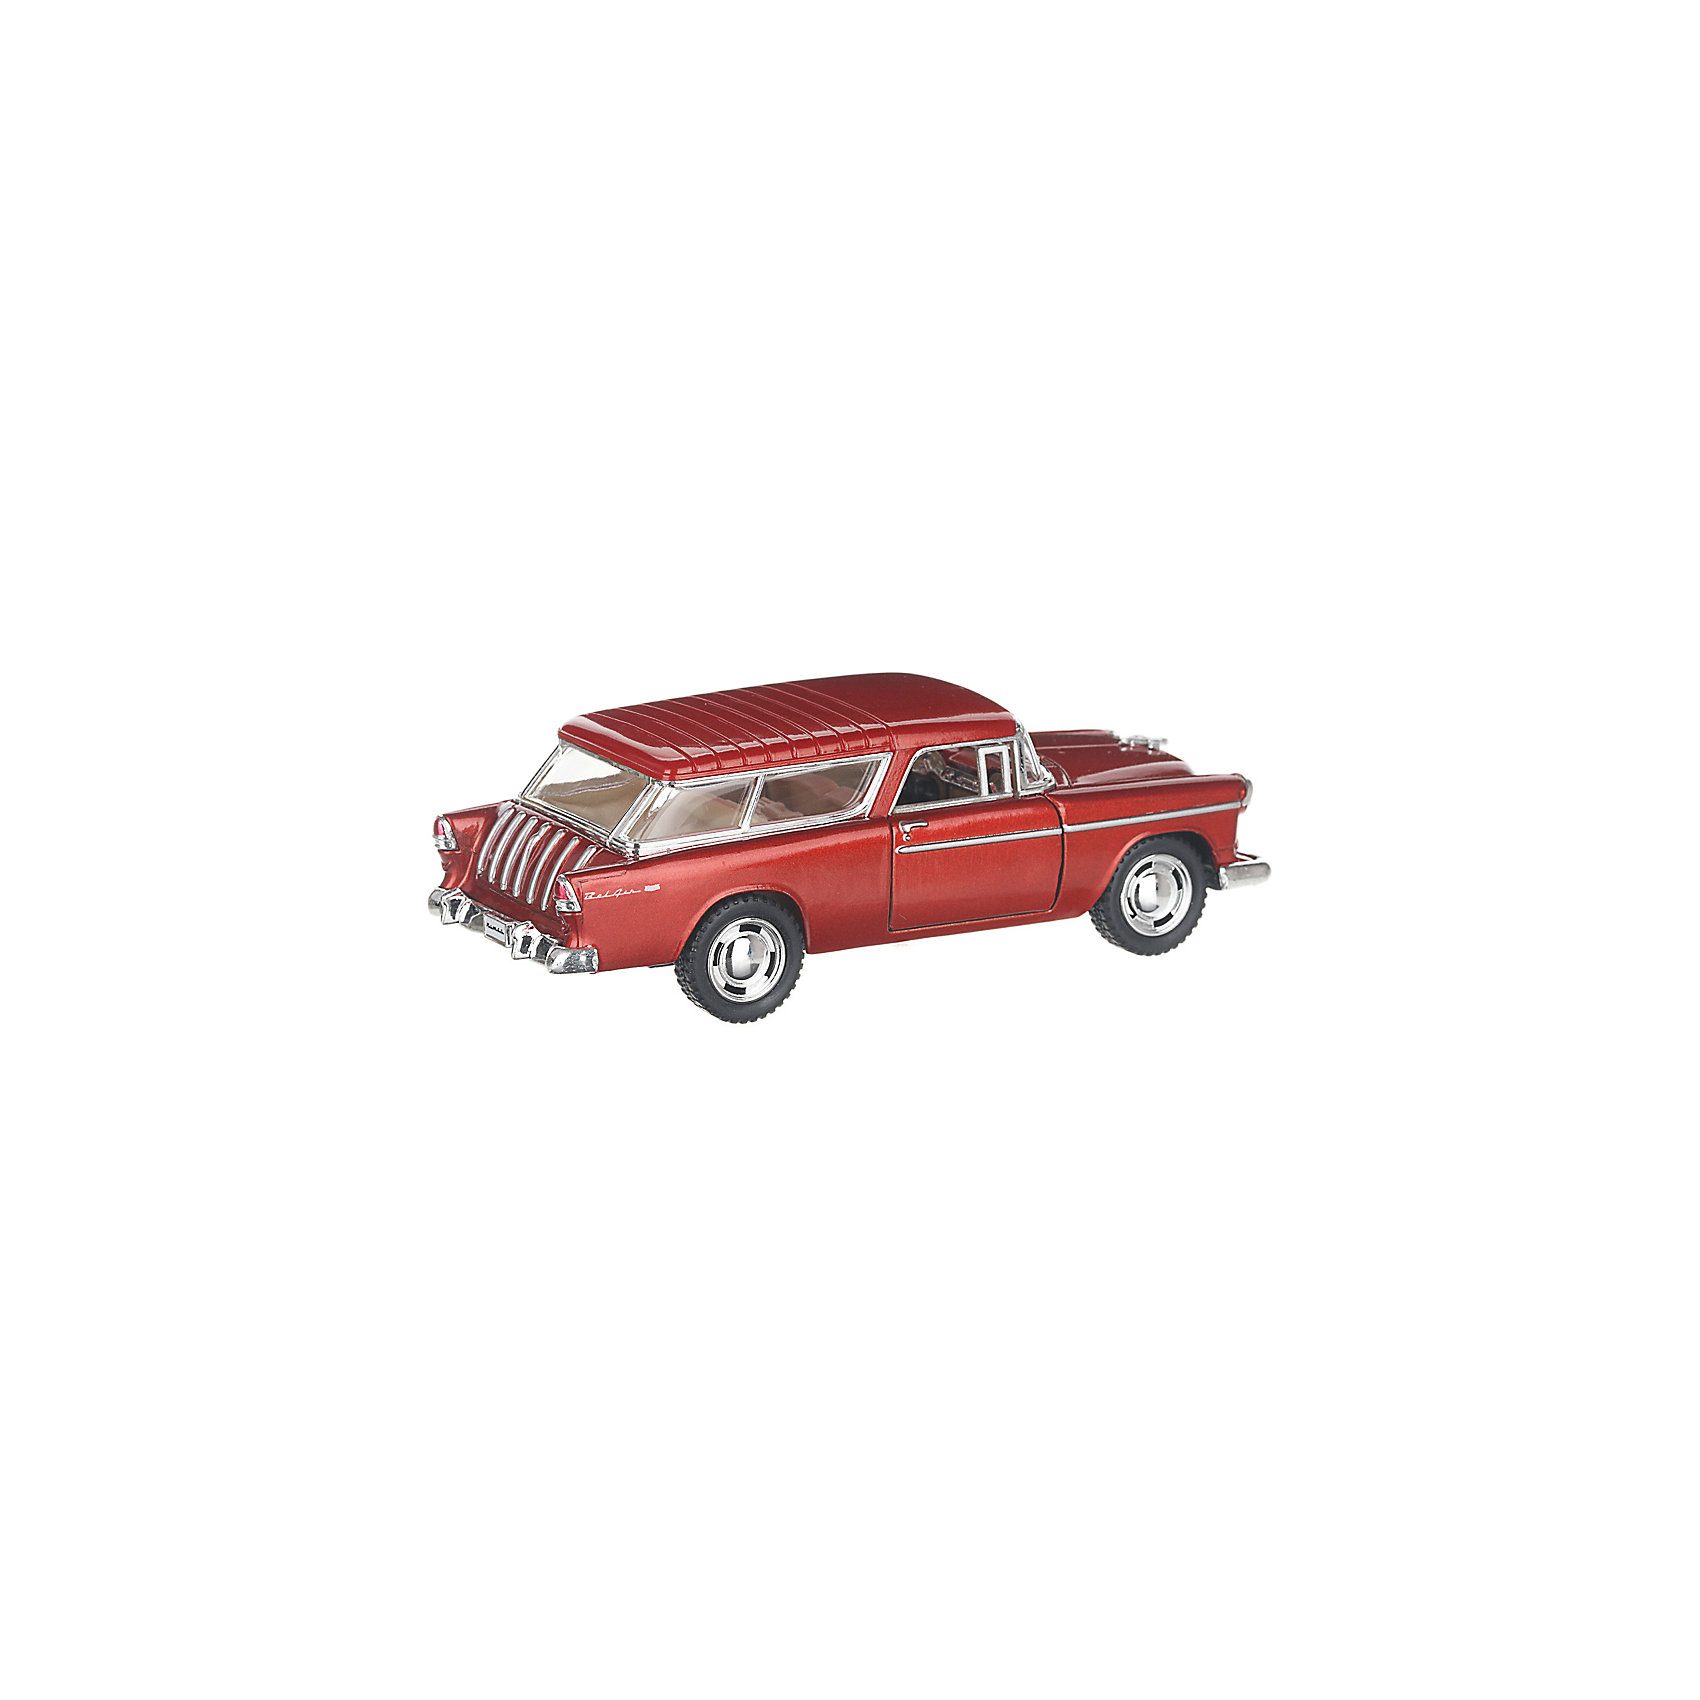 Коллекционная машинка Chevrolet Nomad hardtop, бордовая Serinity Toys 13232959